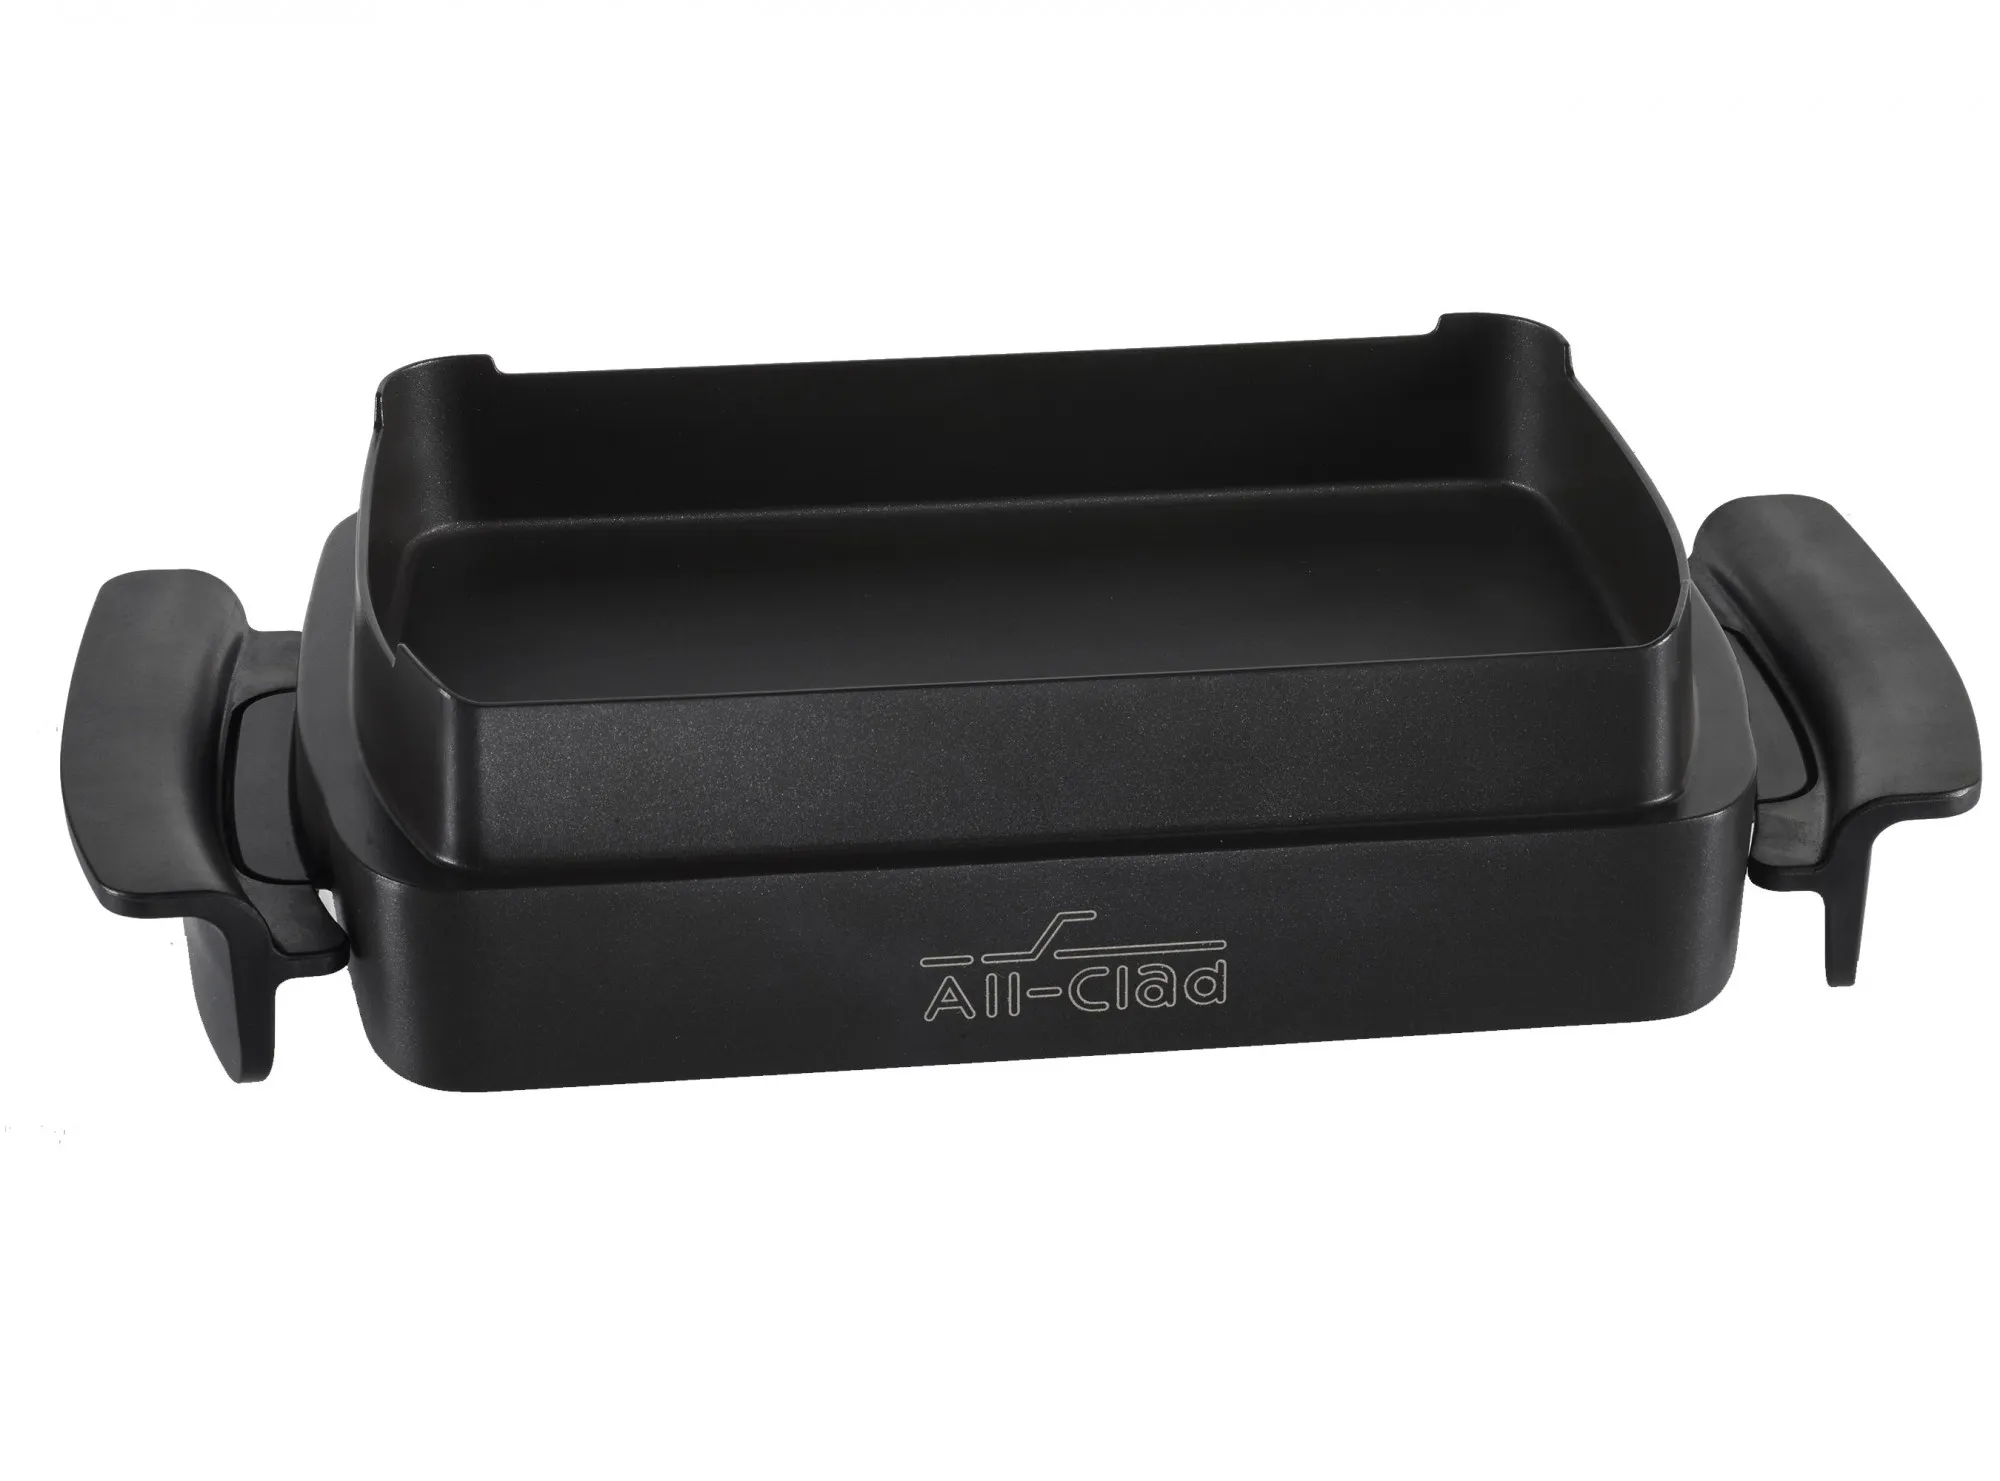 Une pince-grill, un accessoire du grill All Clad, avec technologie Autosense.